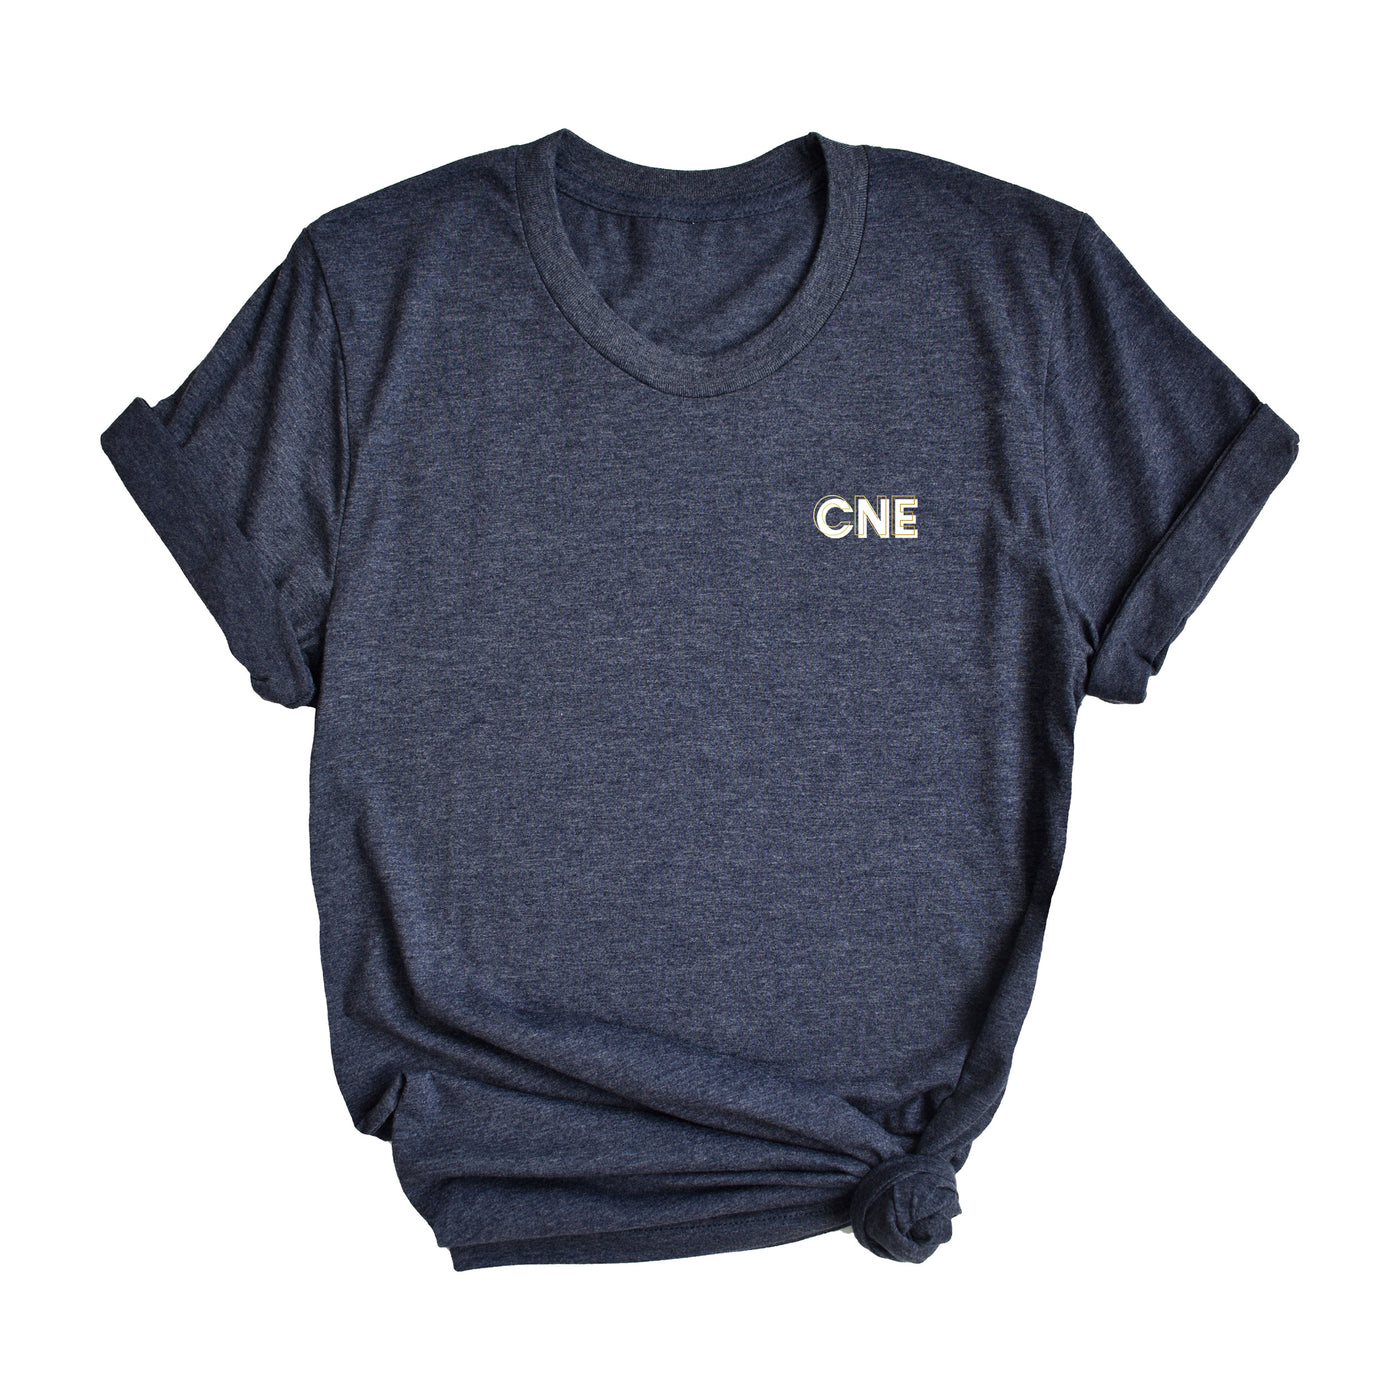 CNE Creds - Shirt